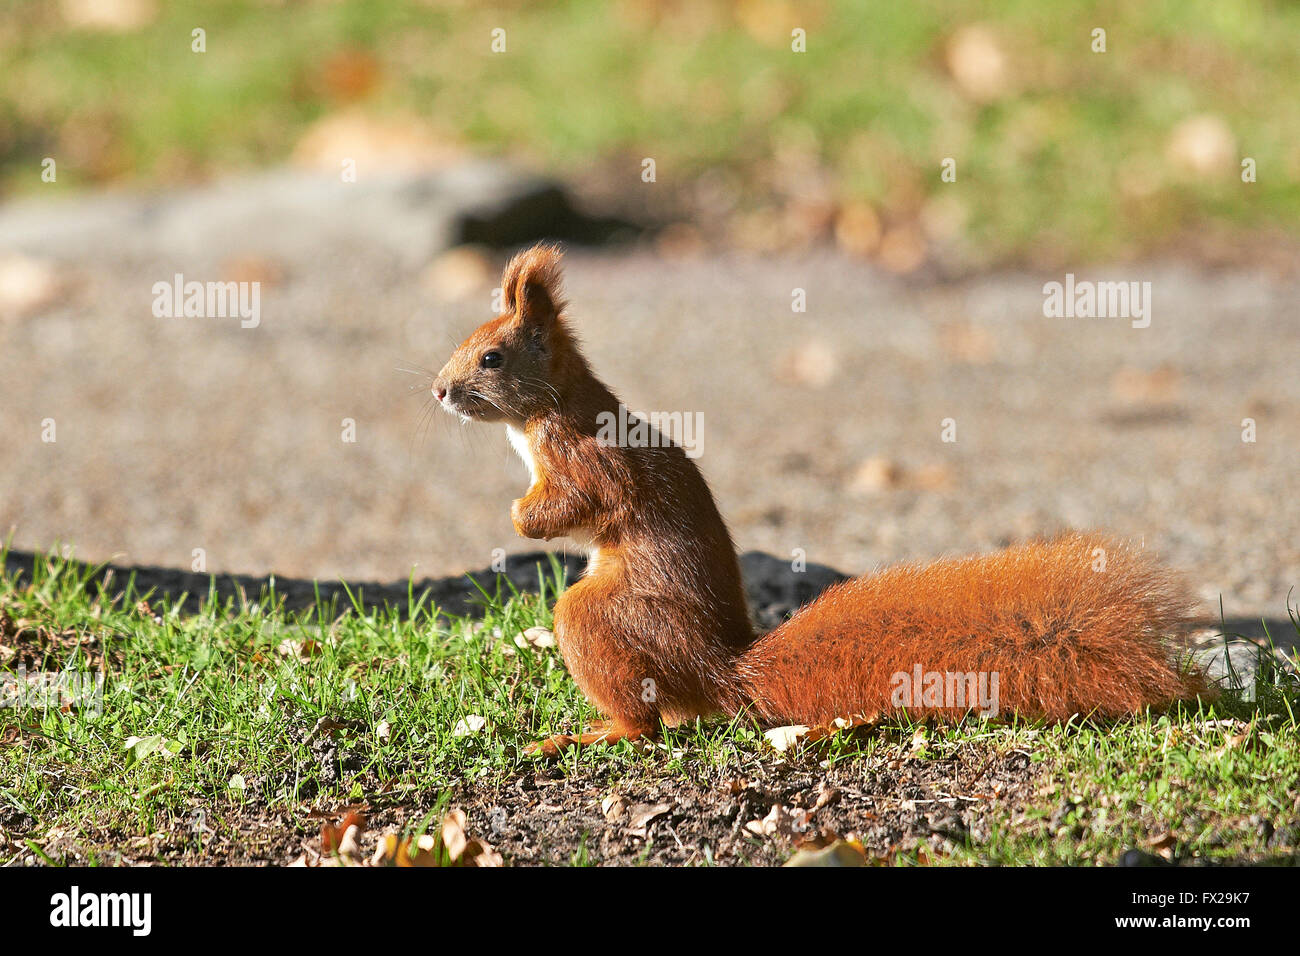 Eurasian écureuil rouge assis sur le sol Banque D'Images